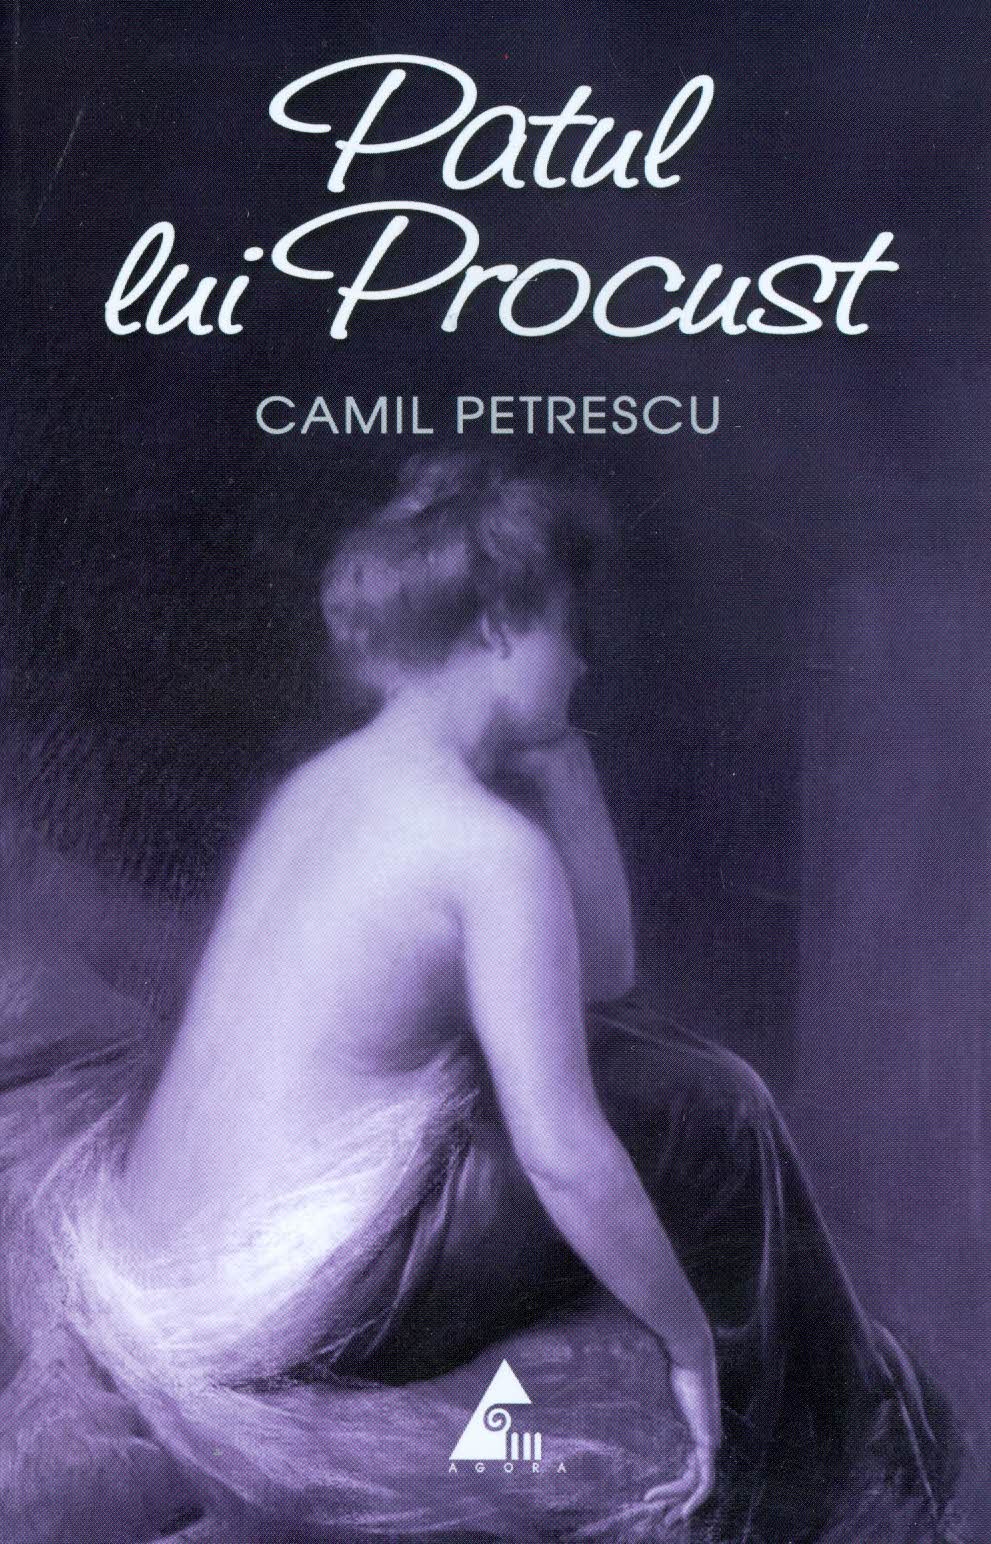 Patul lui Procust - Camil Petrescu